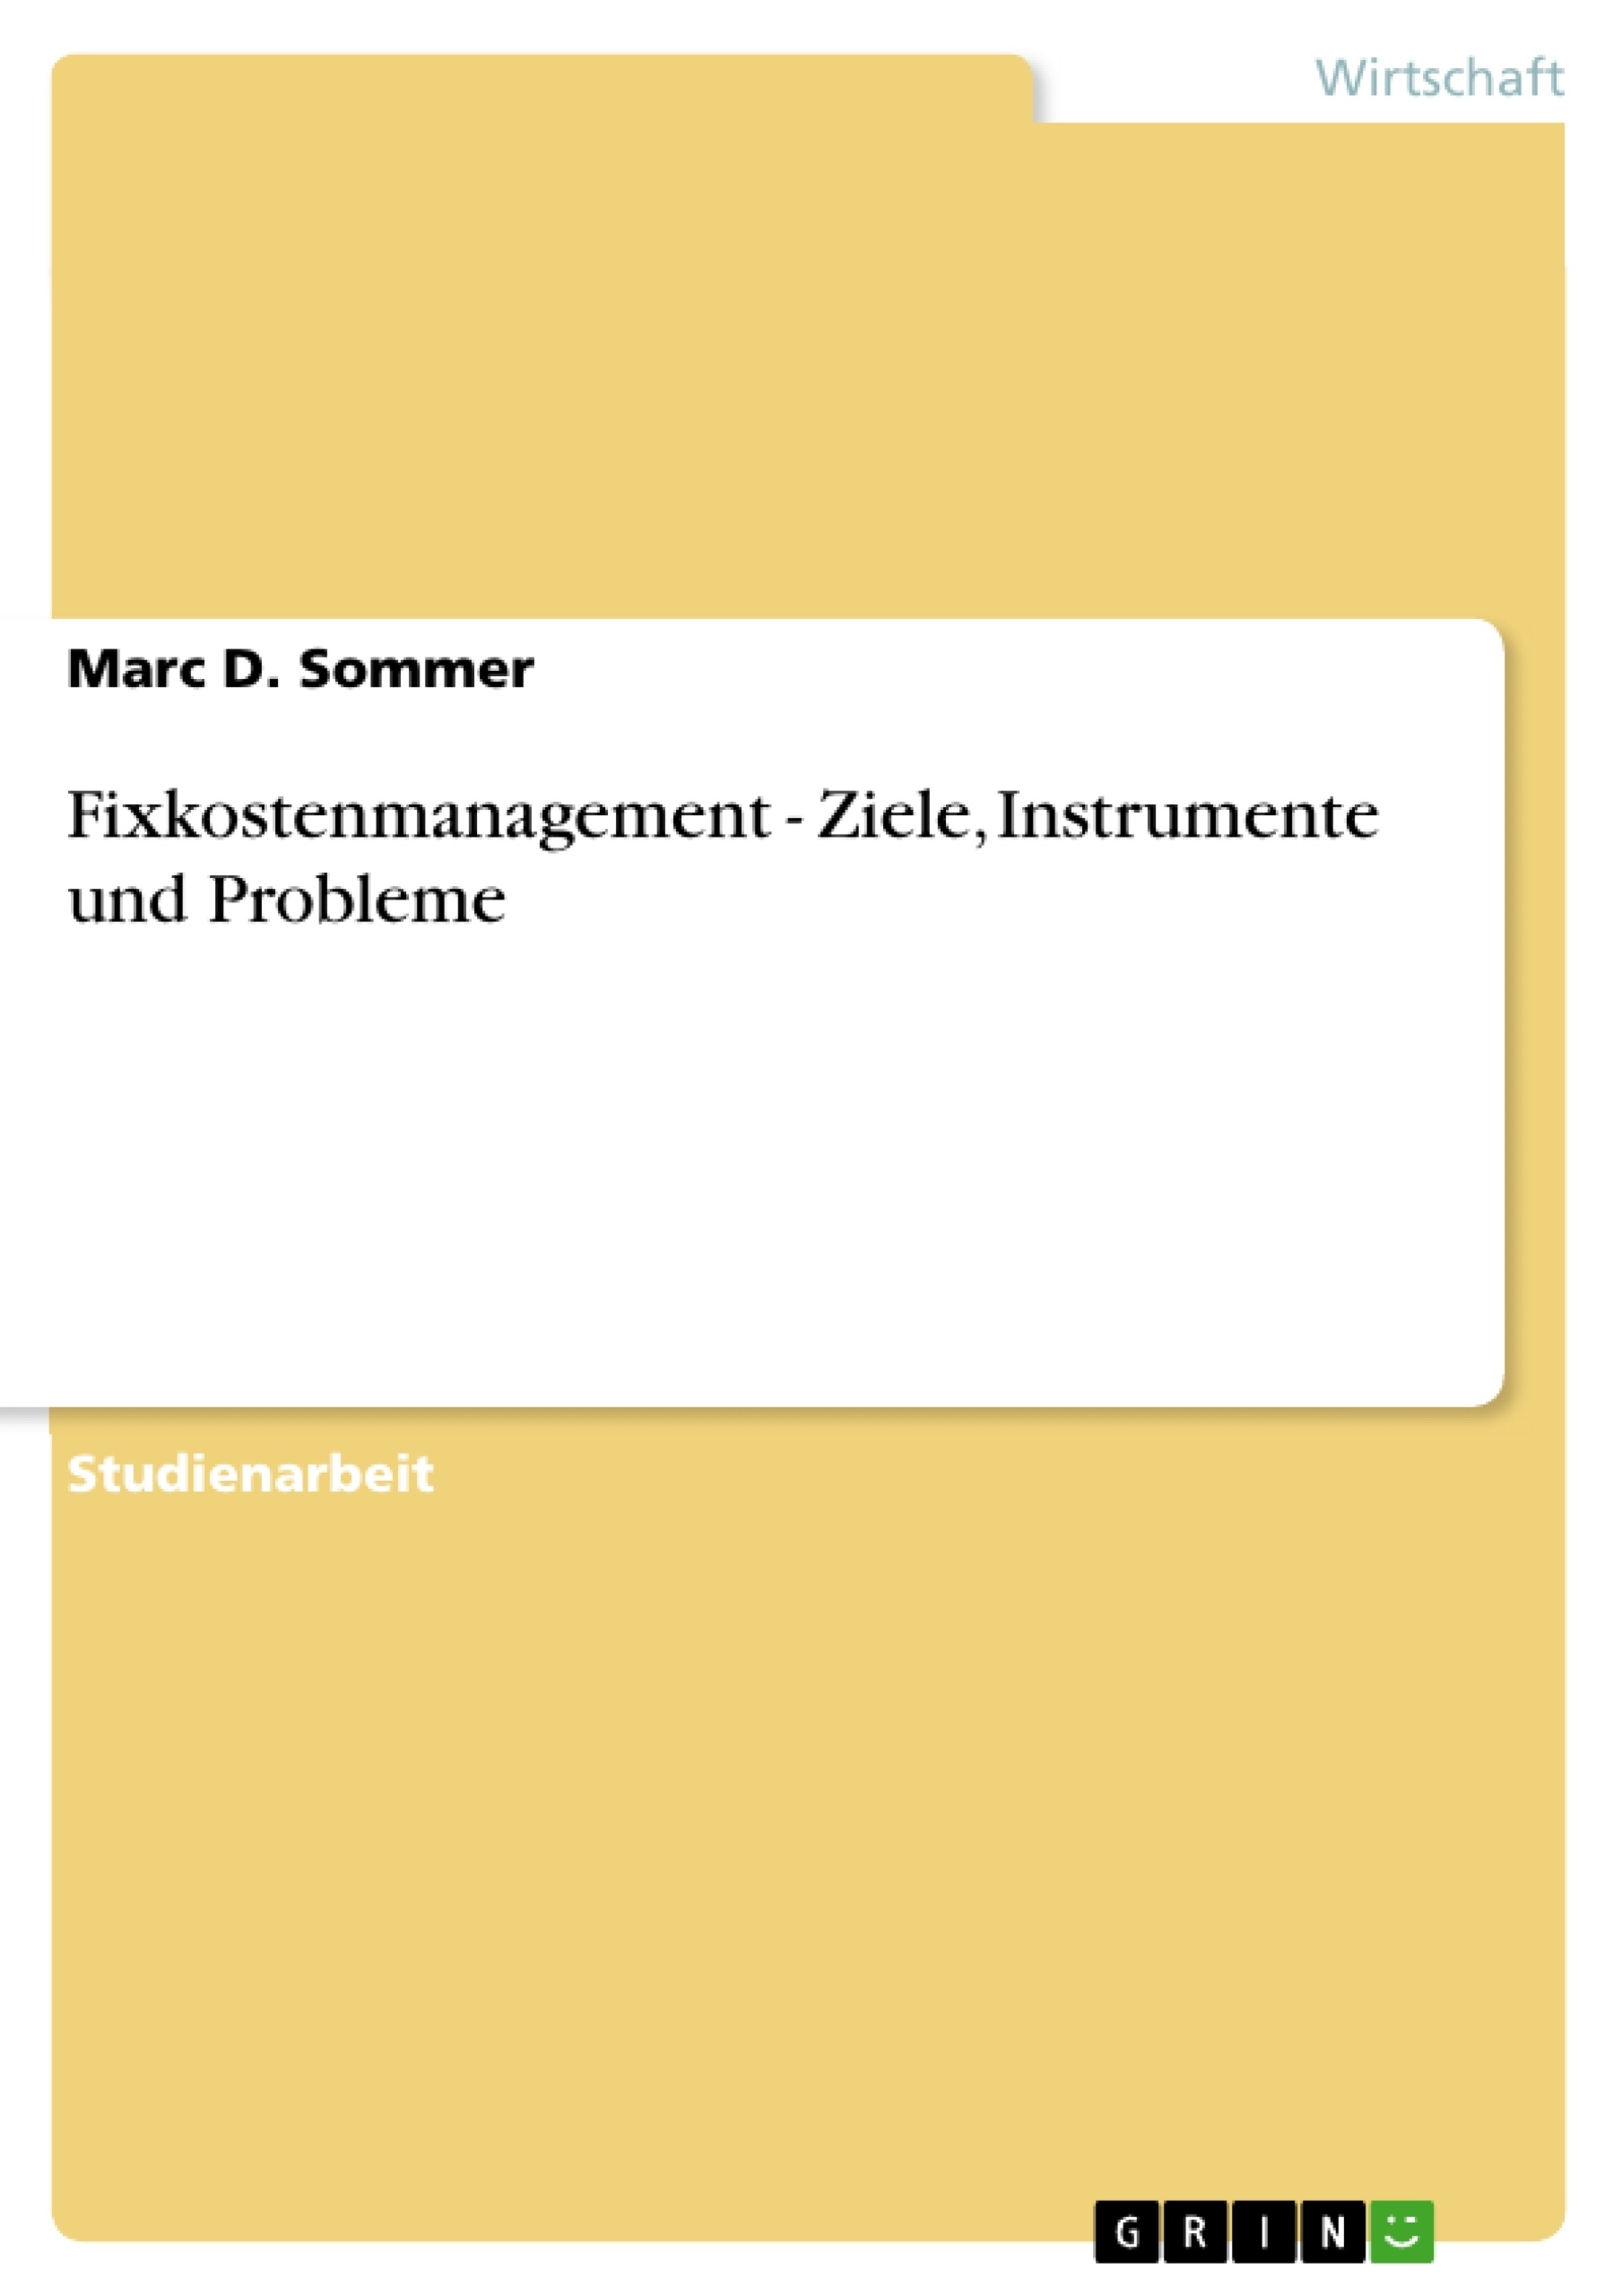 Title: Fixkostenmanagement - Ziele, Instrumente und Probleme